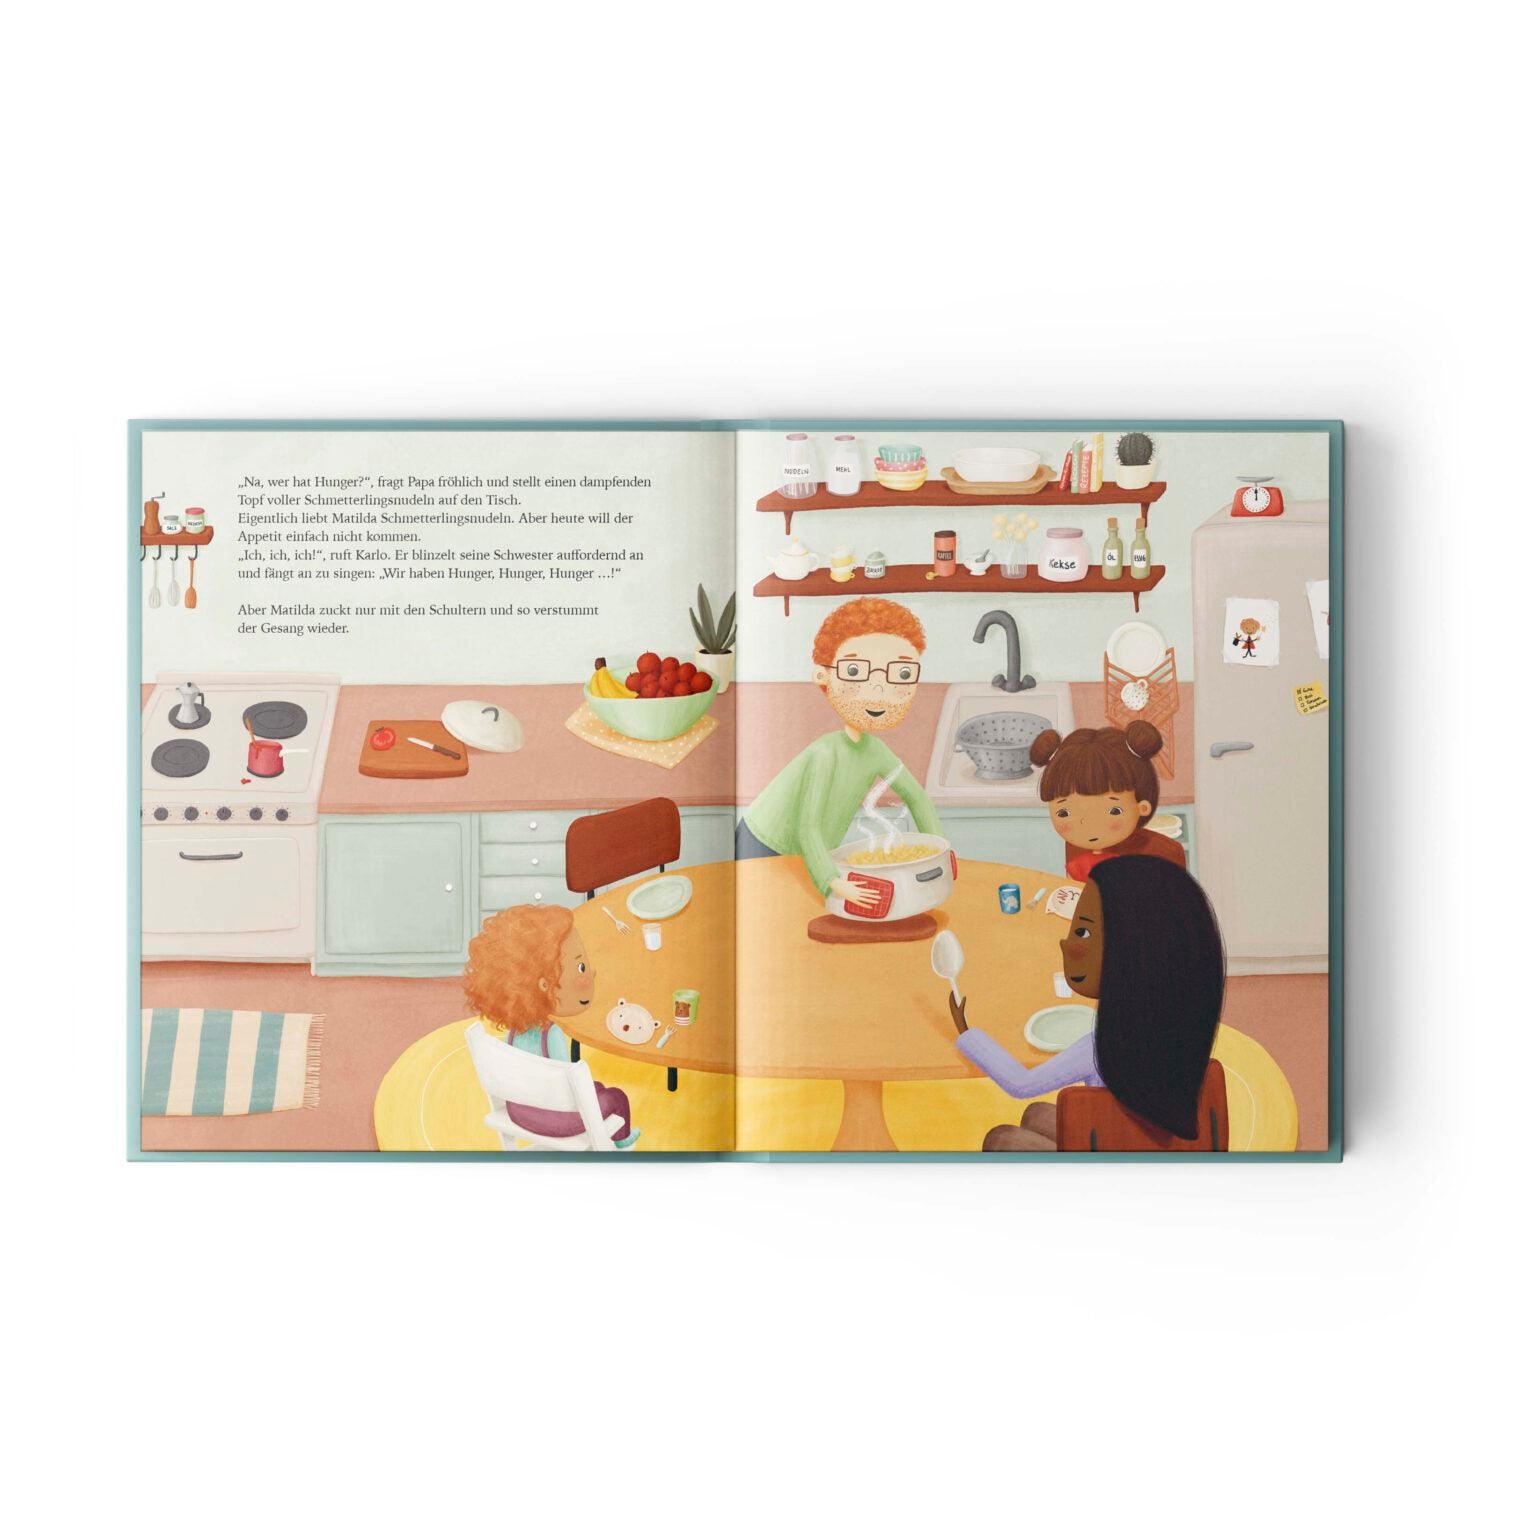 Kinderbuch – Kirschkernmond